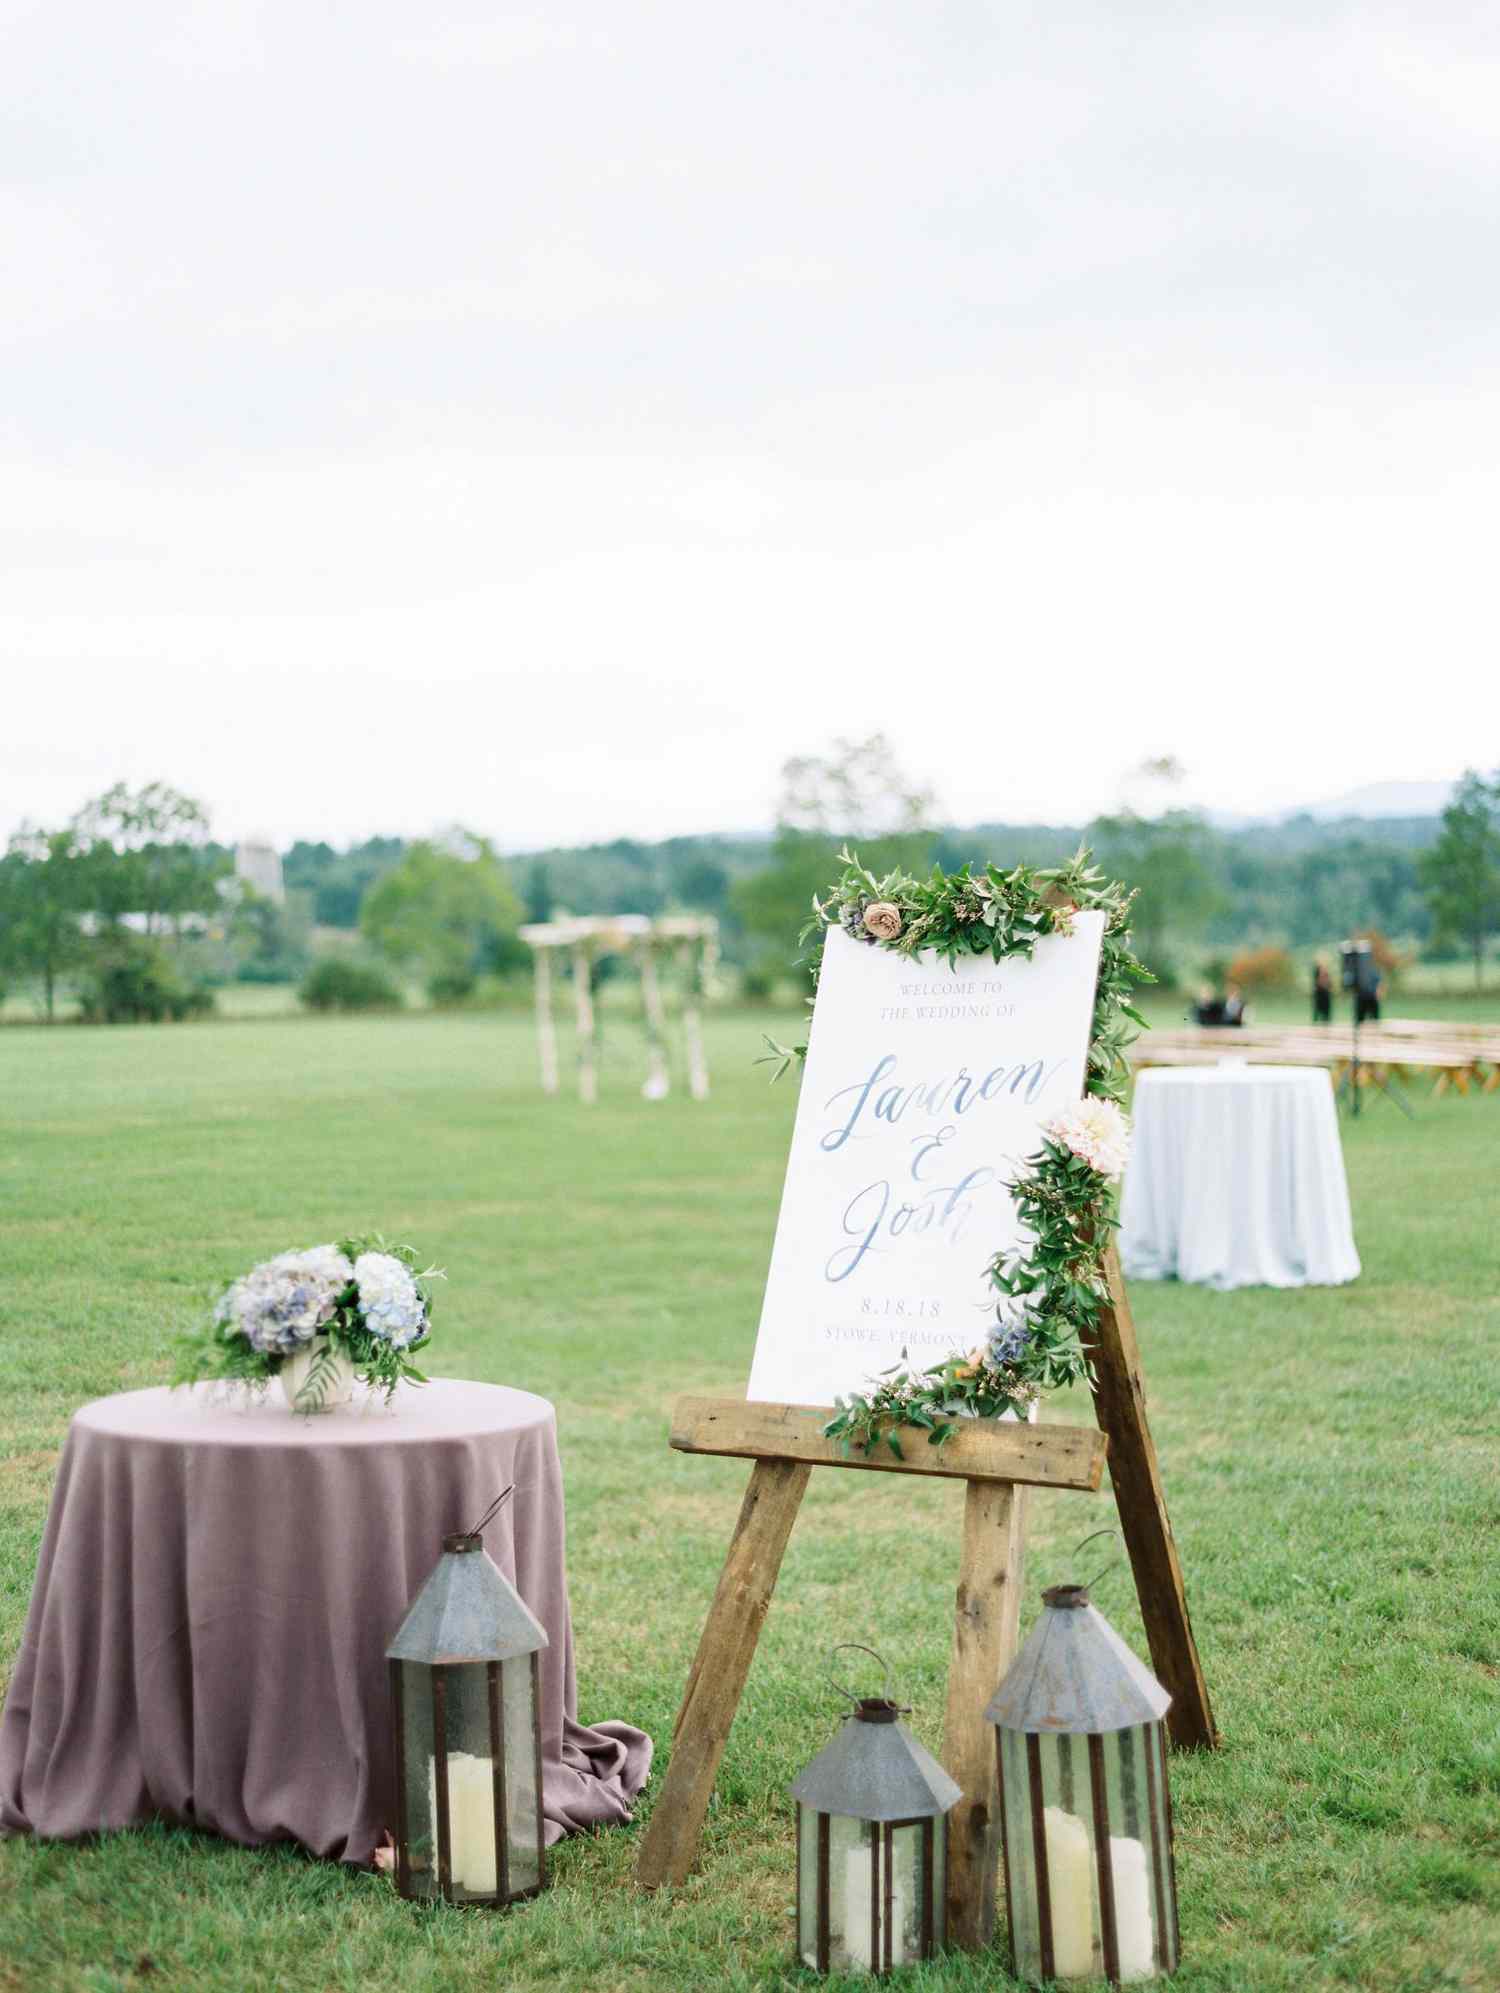 lauren josh wedding sign in field